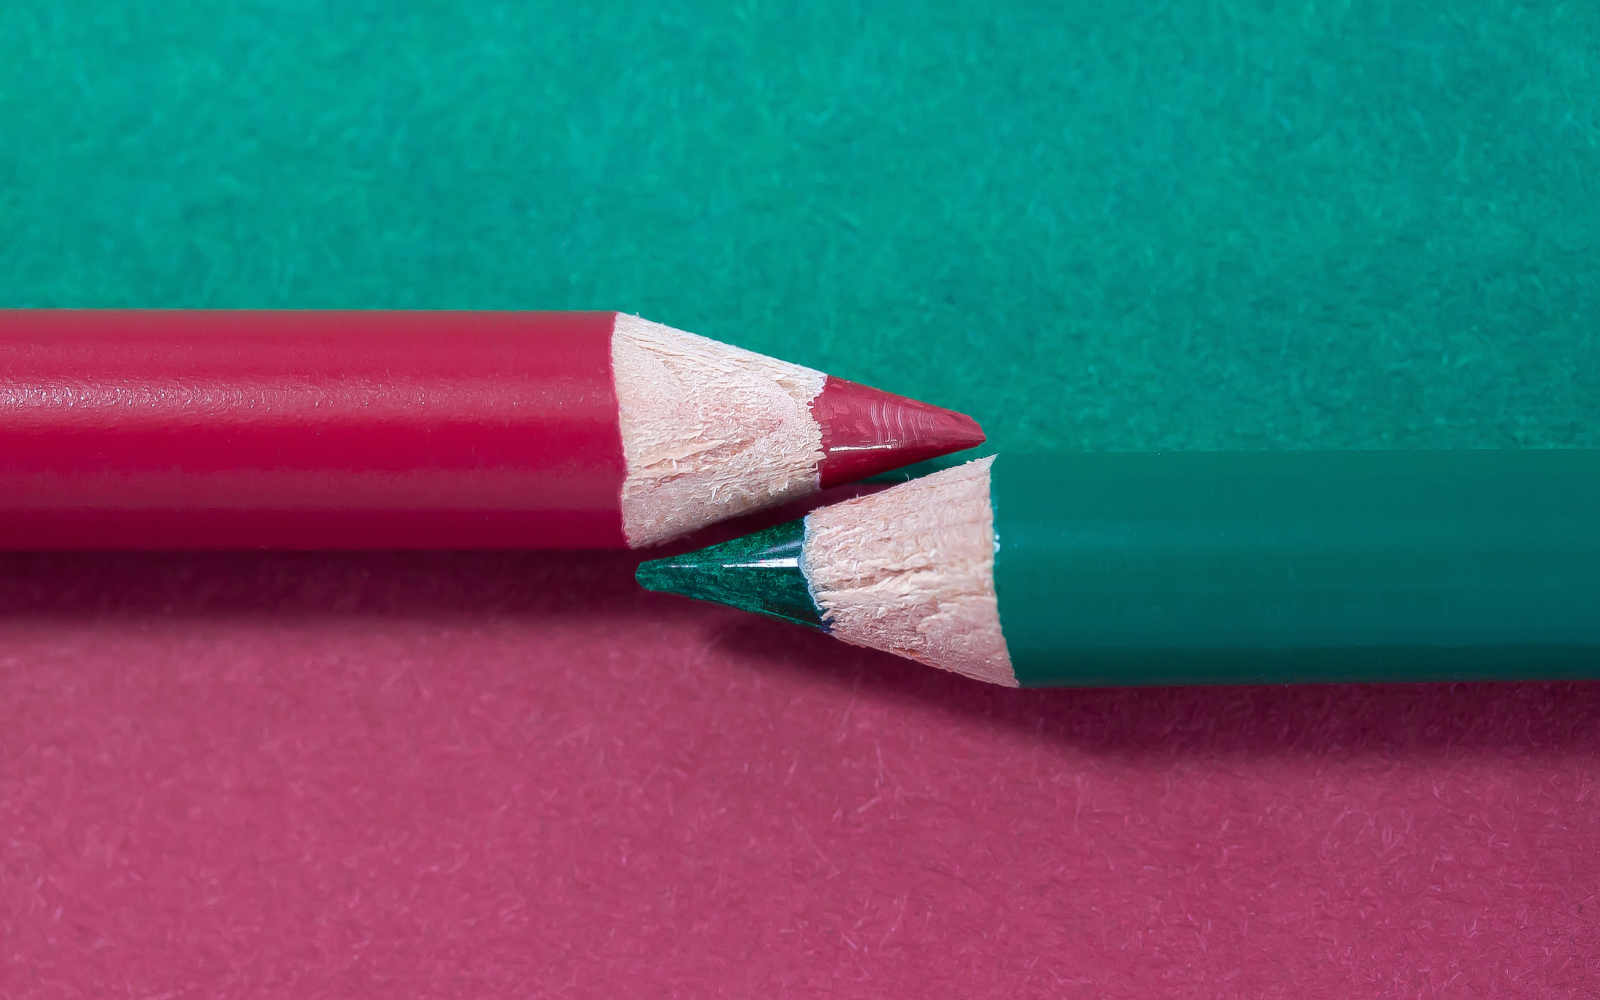 Deux crayons de couleur pourpre et émeraude qui se font face sur une surface divisée dans les deux couleurs